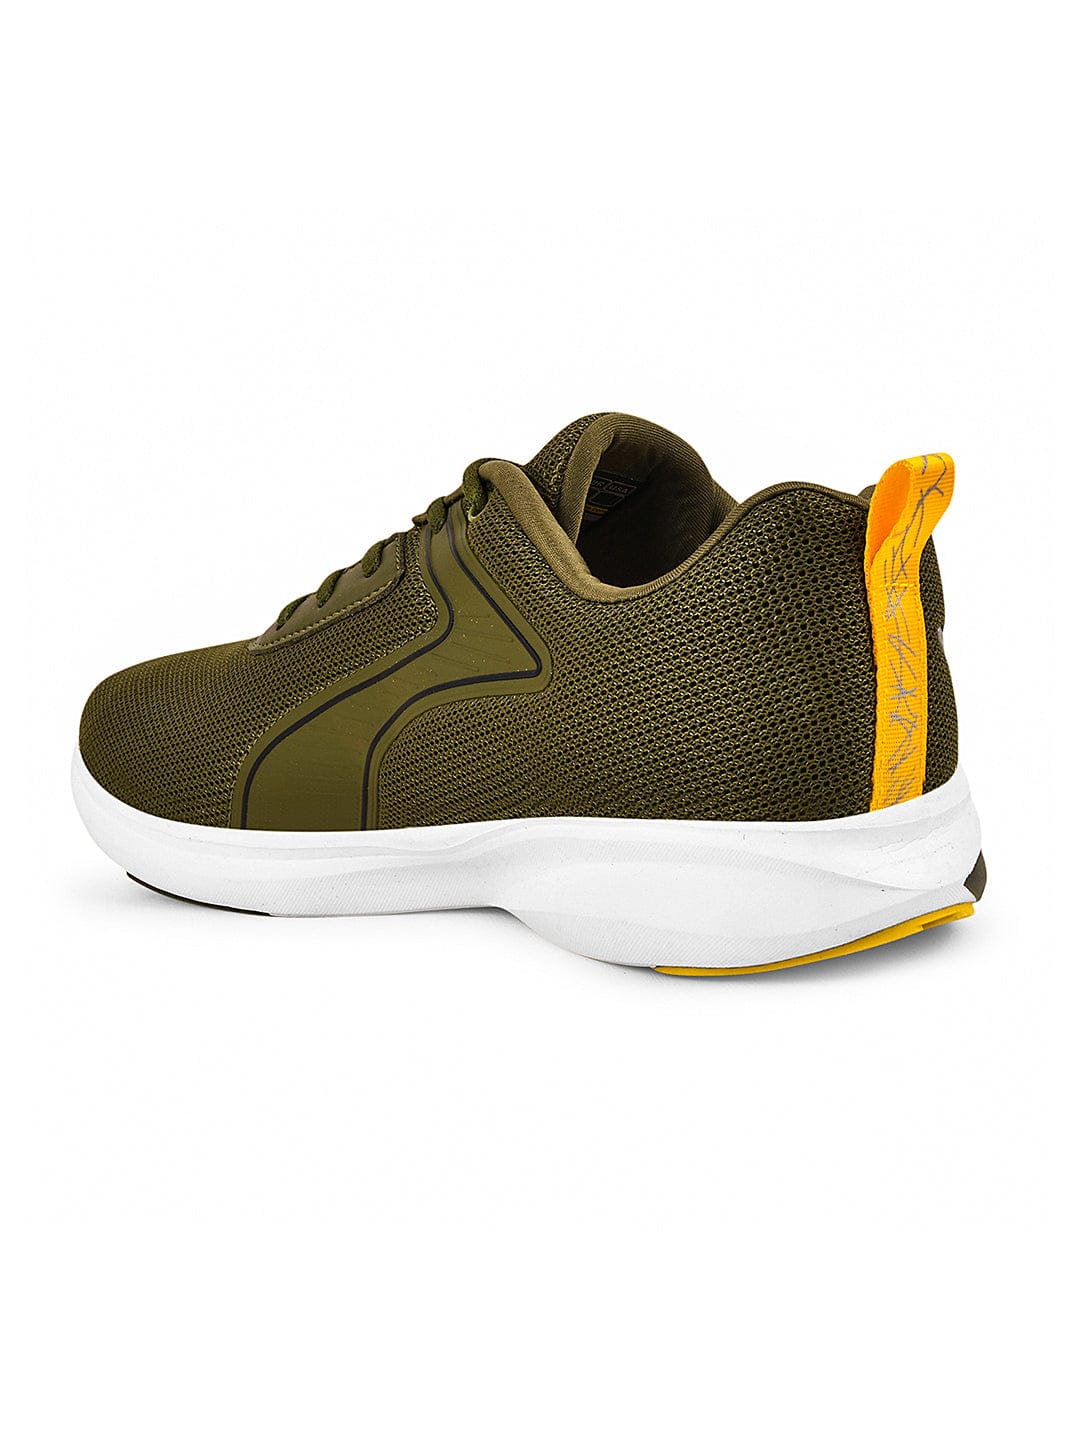 Puma - Mens Rebound Rugged Shoes, Size: 13 M US, Color: Burnt Olive/Burnt  Olive/Puma Team Gold - Walmart.com